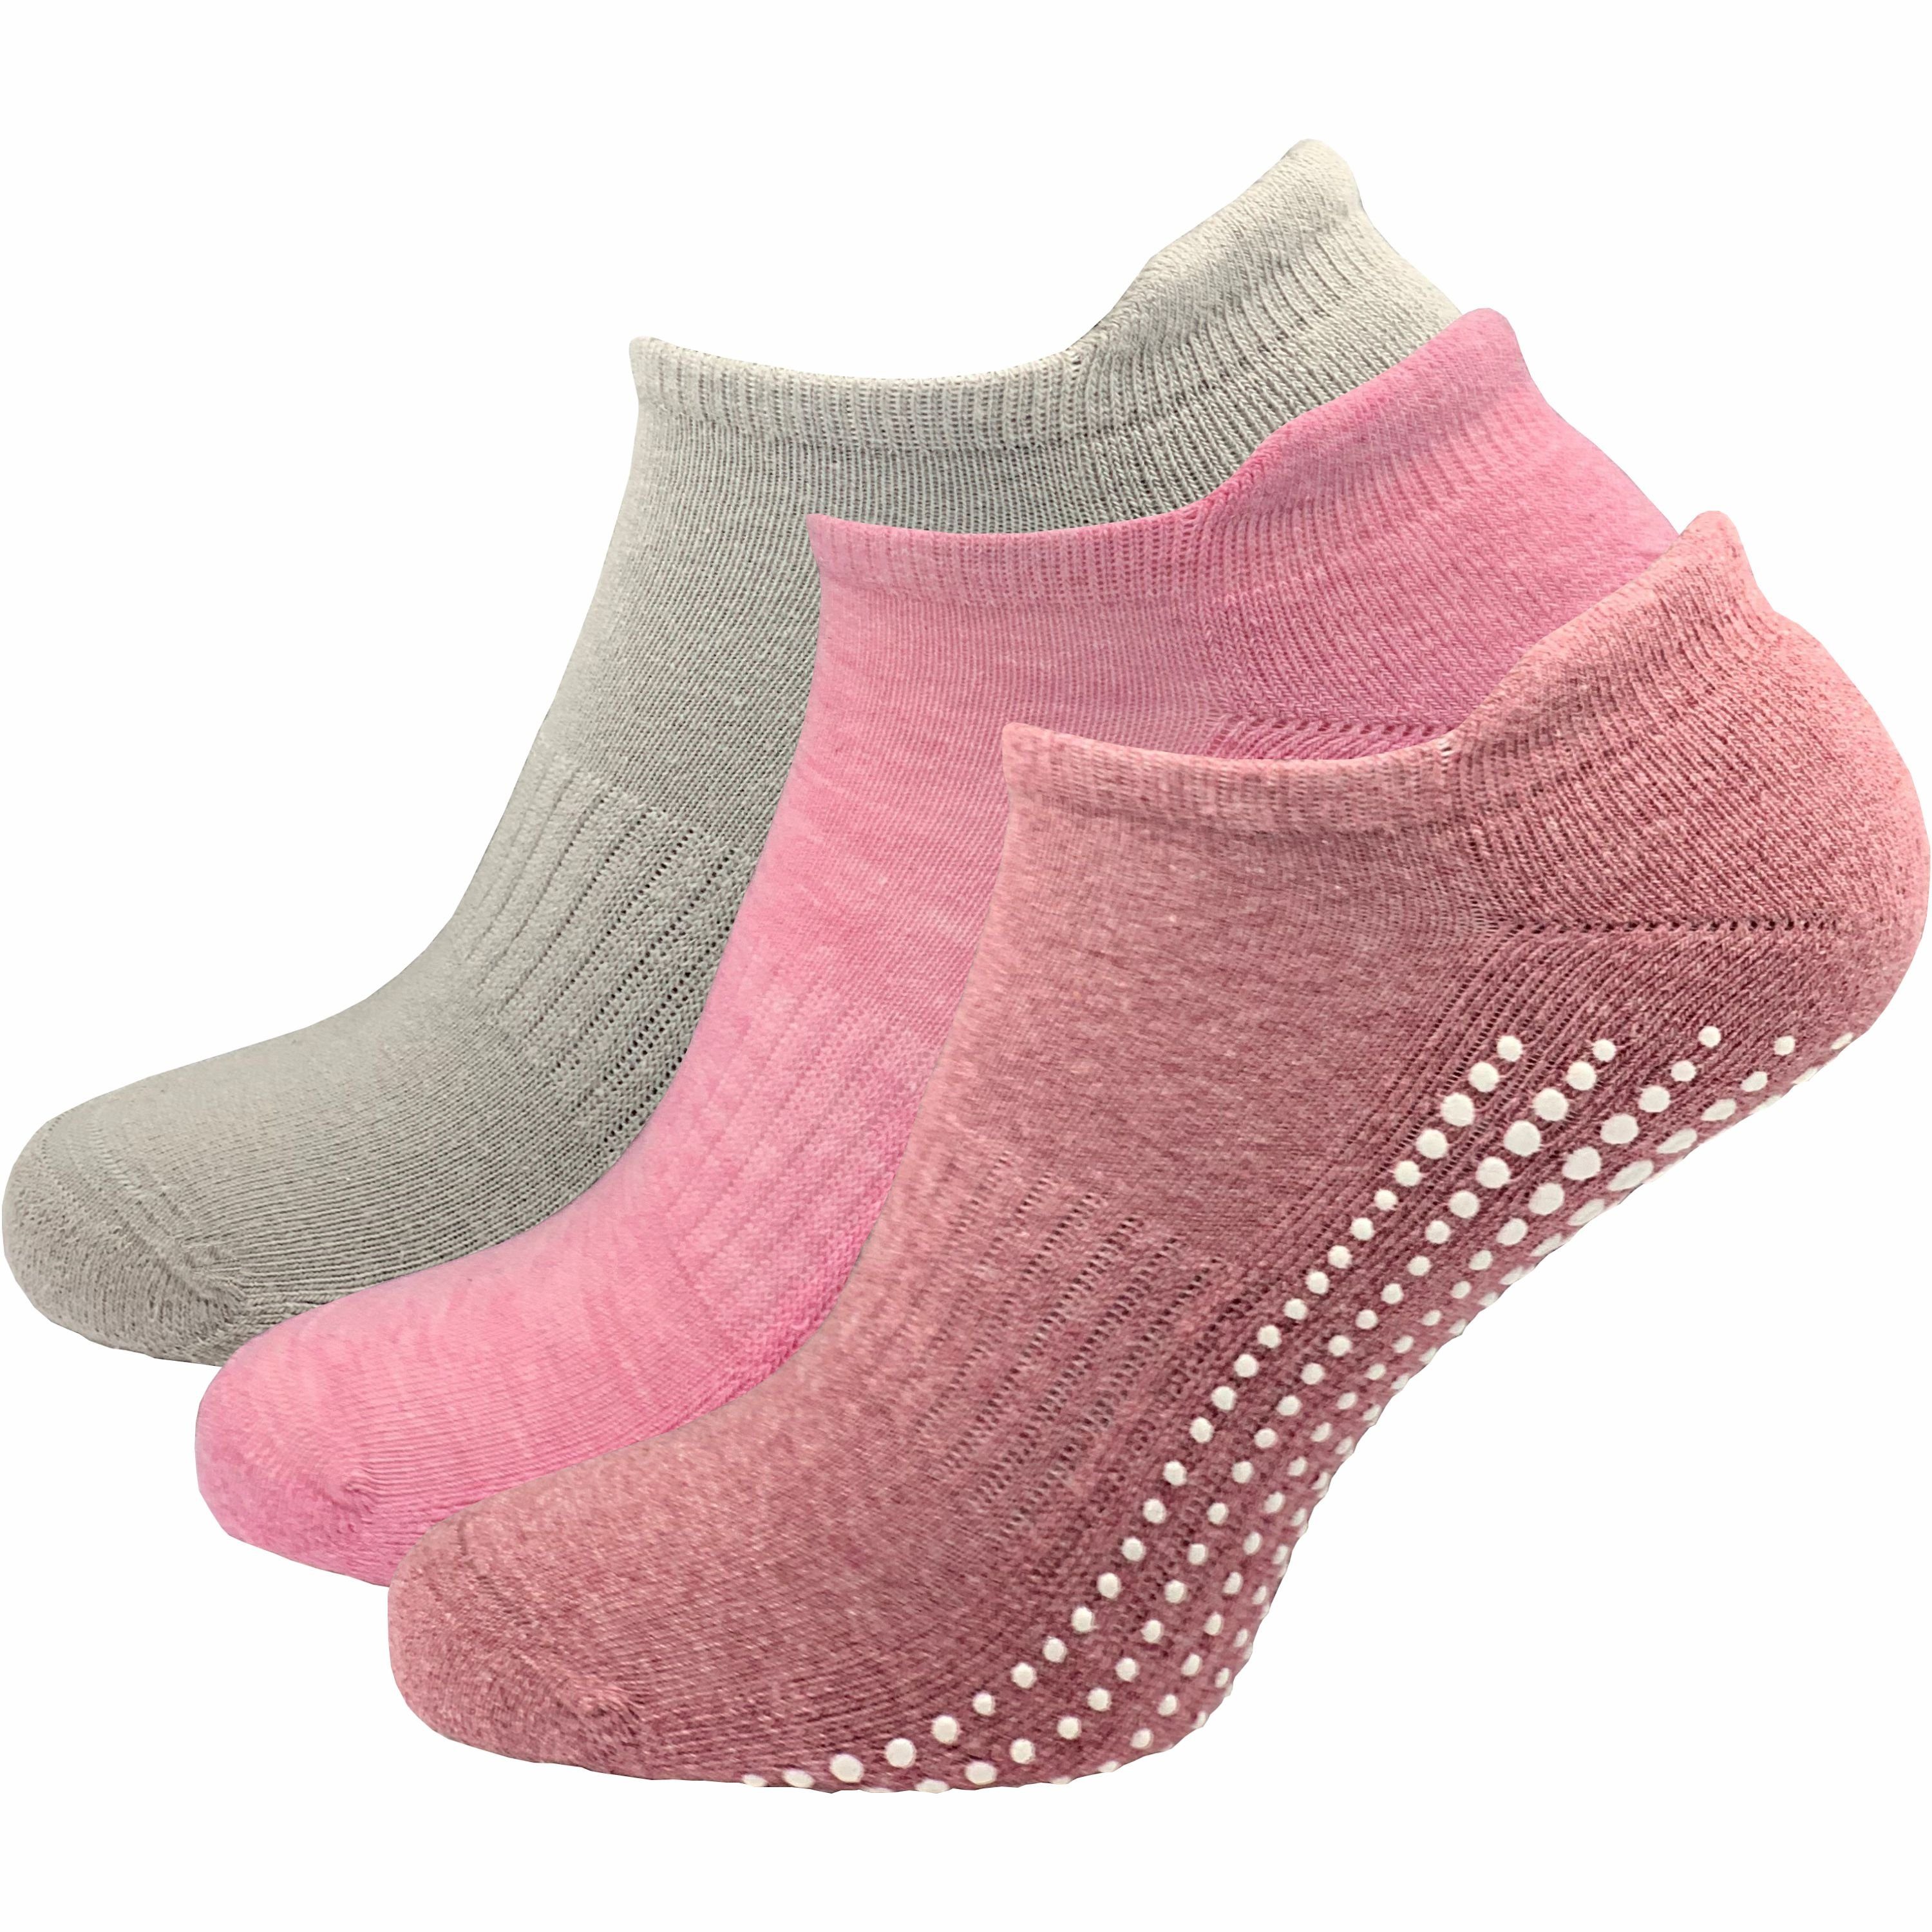 (3 - Yoga - - hohem auf sicherer - & Halt Socken 1 GAWILO Böden mit glatten ABS-Socken rutschfest für Pilates farbig Damen Baumwollanteil Paar)